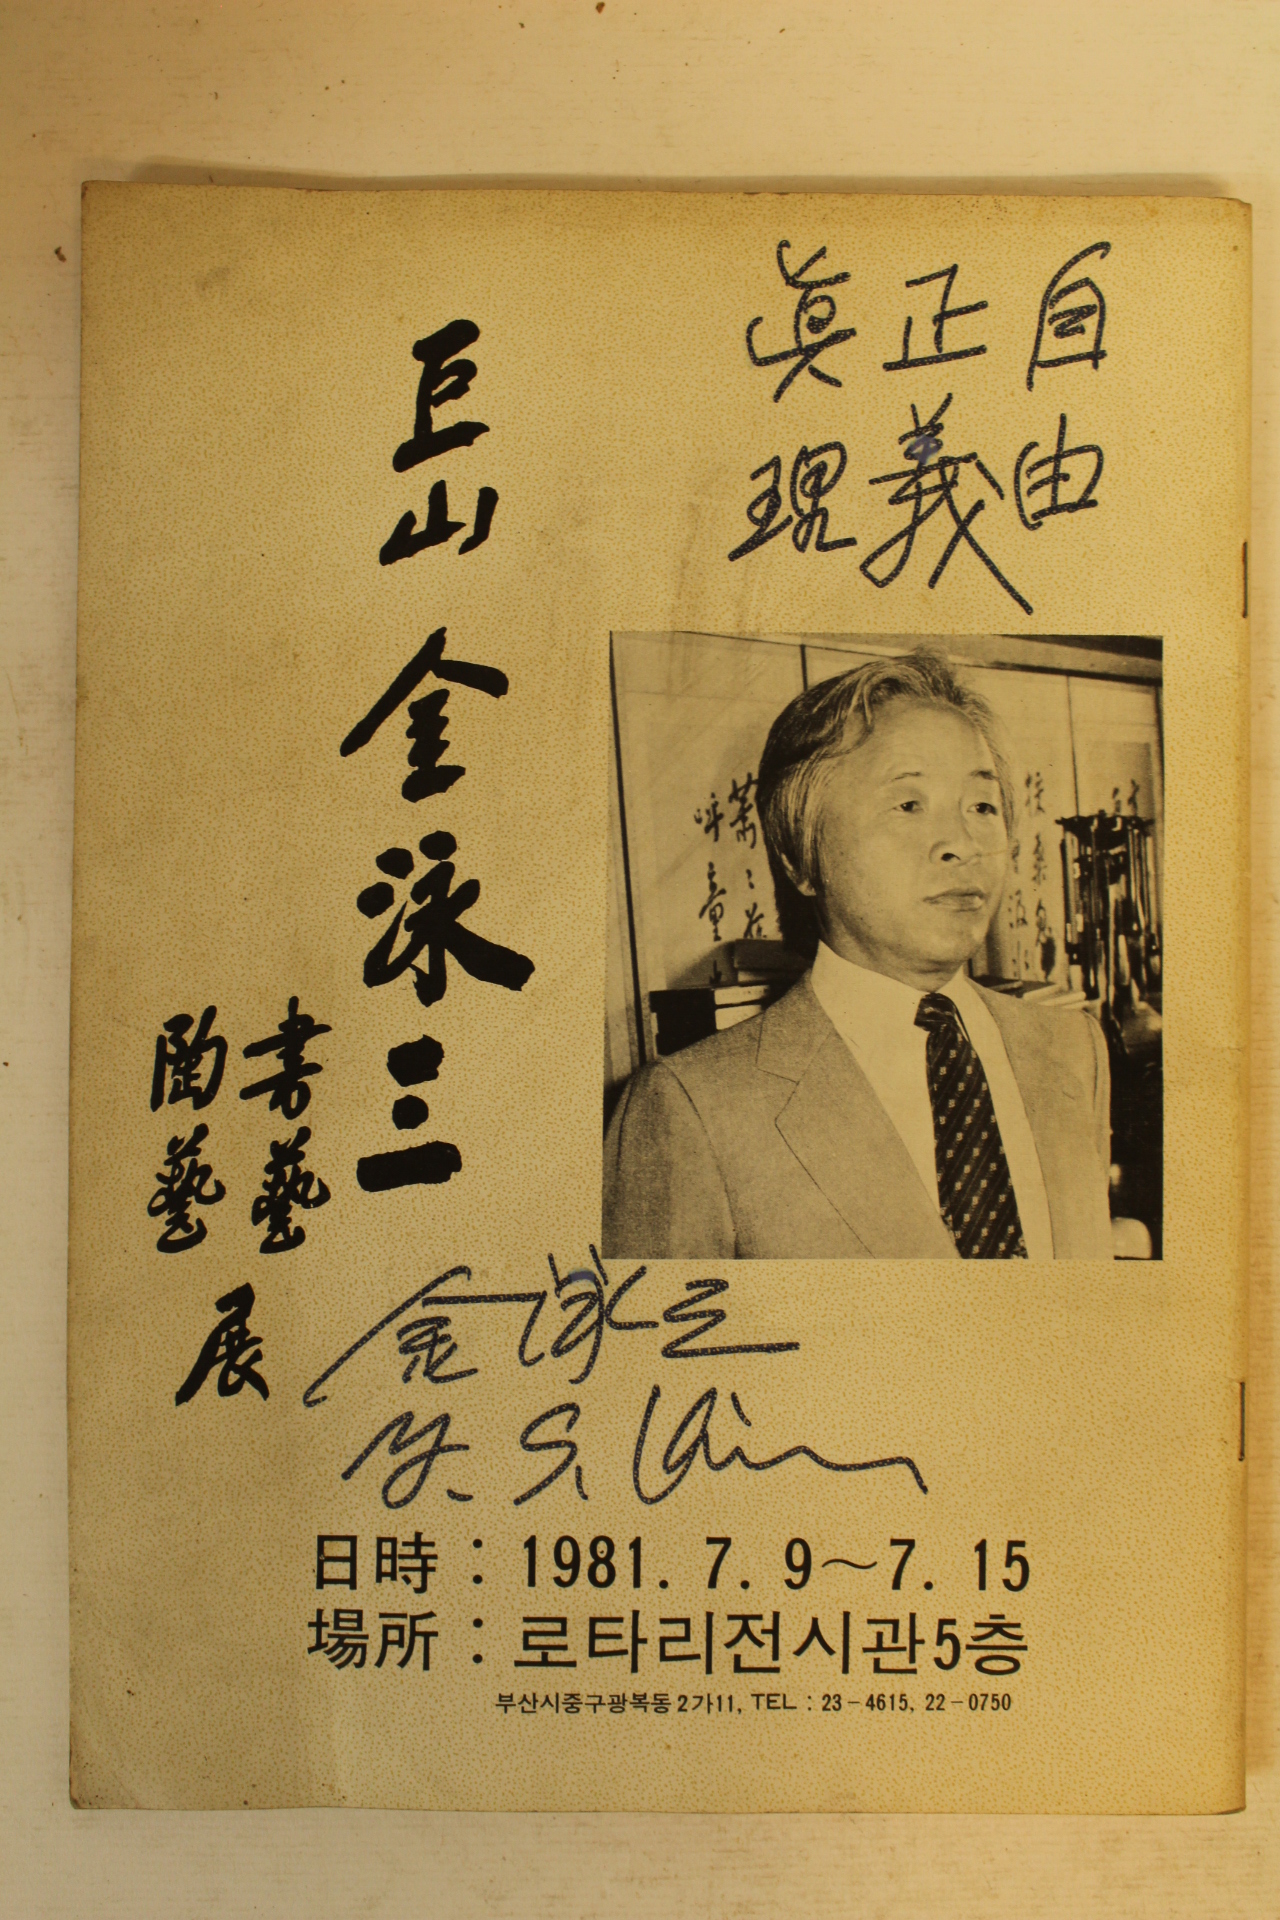 1981년 거산 김영삼(金泳三) 서예.도예전 도록(서명 및 자유,정의,진리 친필글수록)